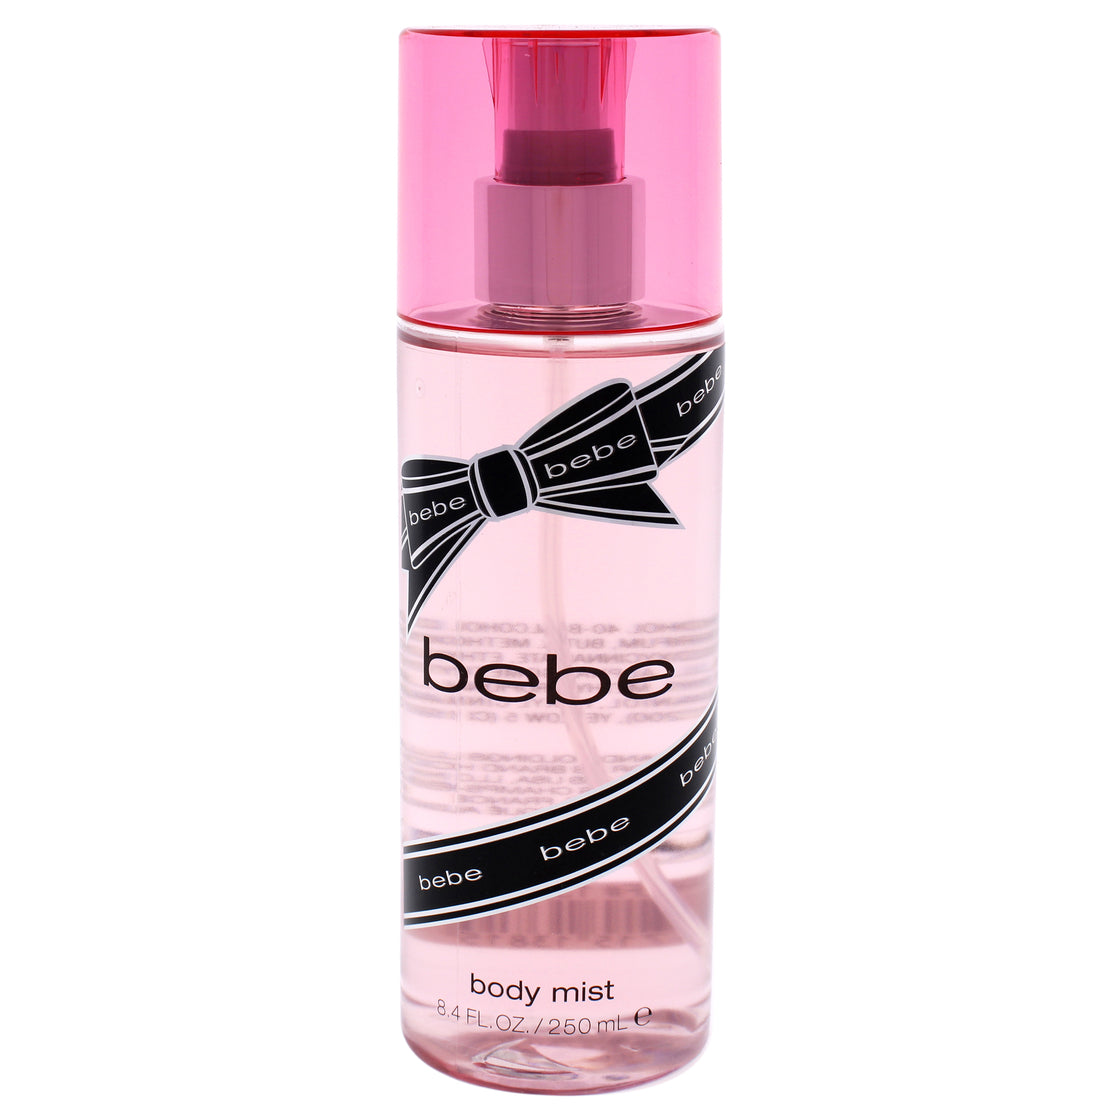 Bebe Silver by Bebe for Women - 8.4 oz Body Mist